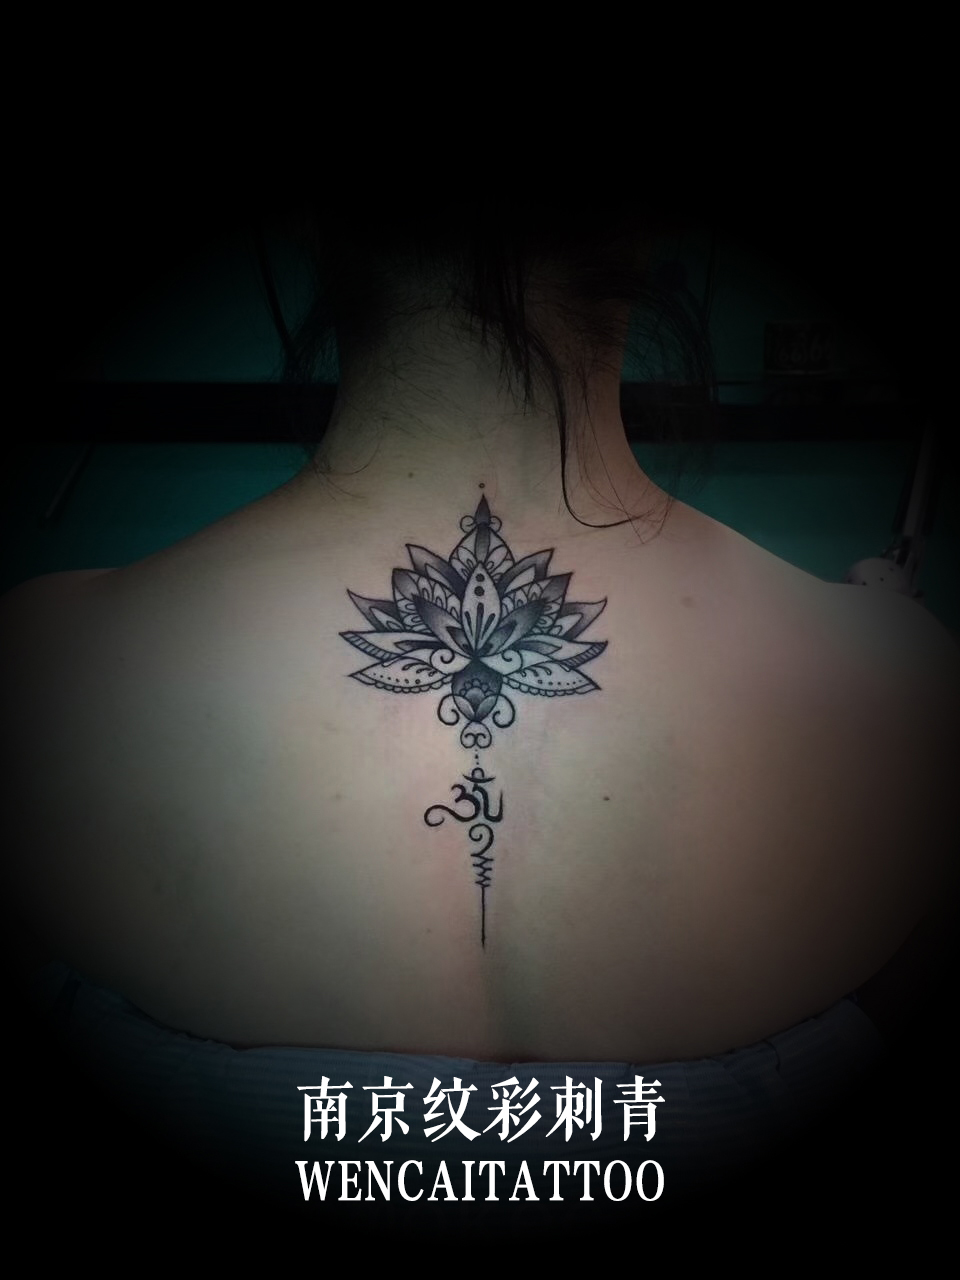 南京的戚小姐后背的点刺莲花梵文纹身图案